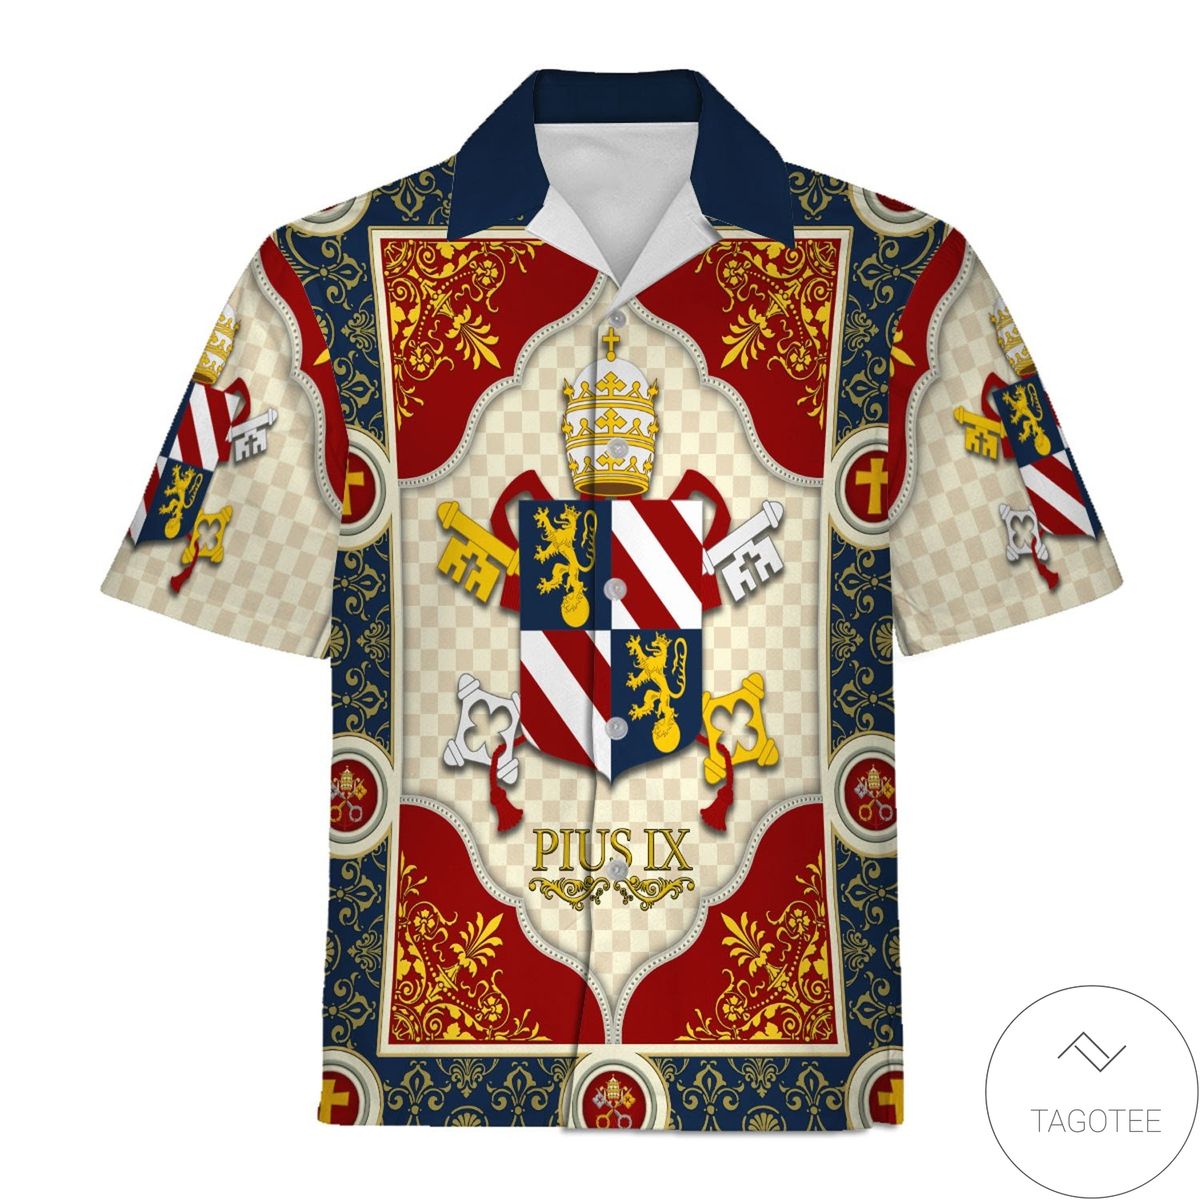 Pope Pius Ix Coat Of Arms Hawaiian Shirt